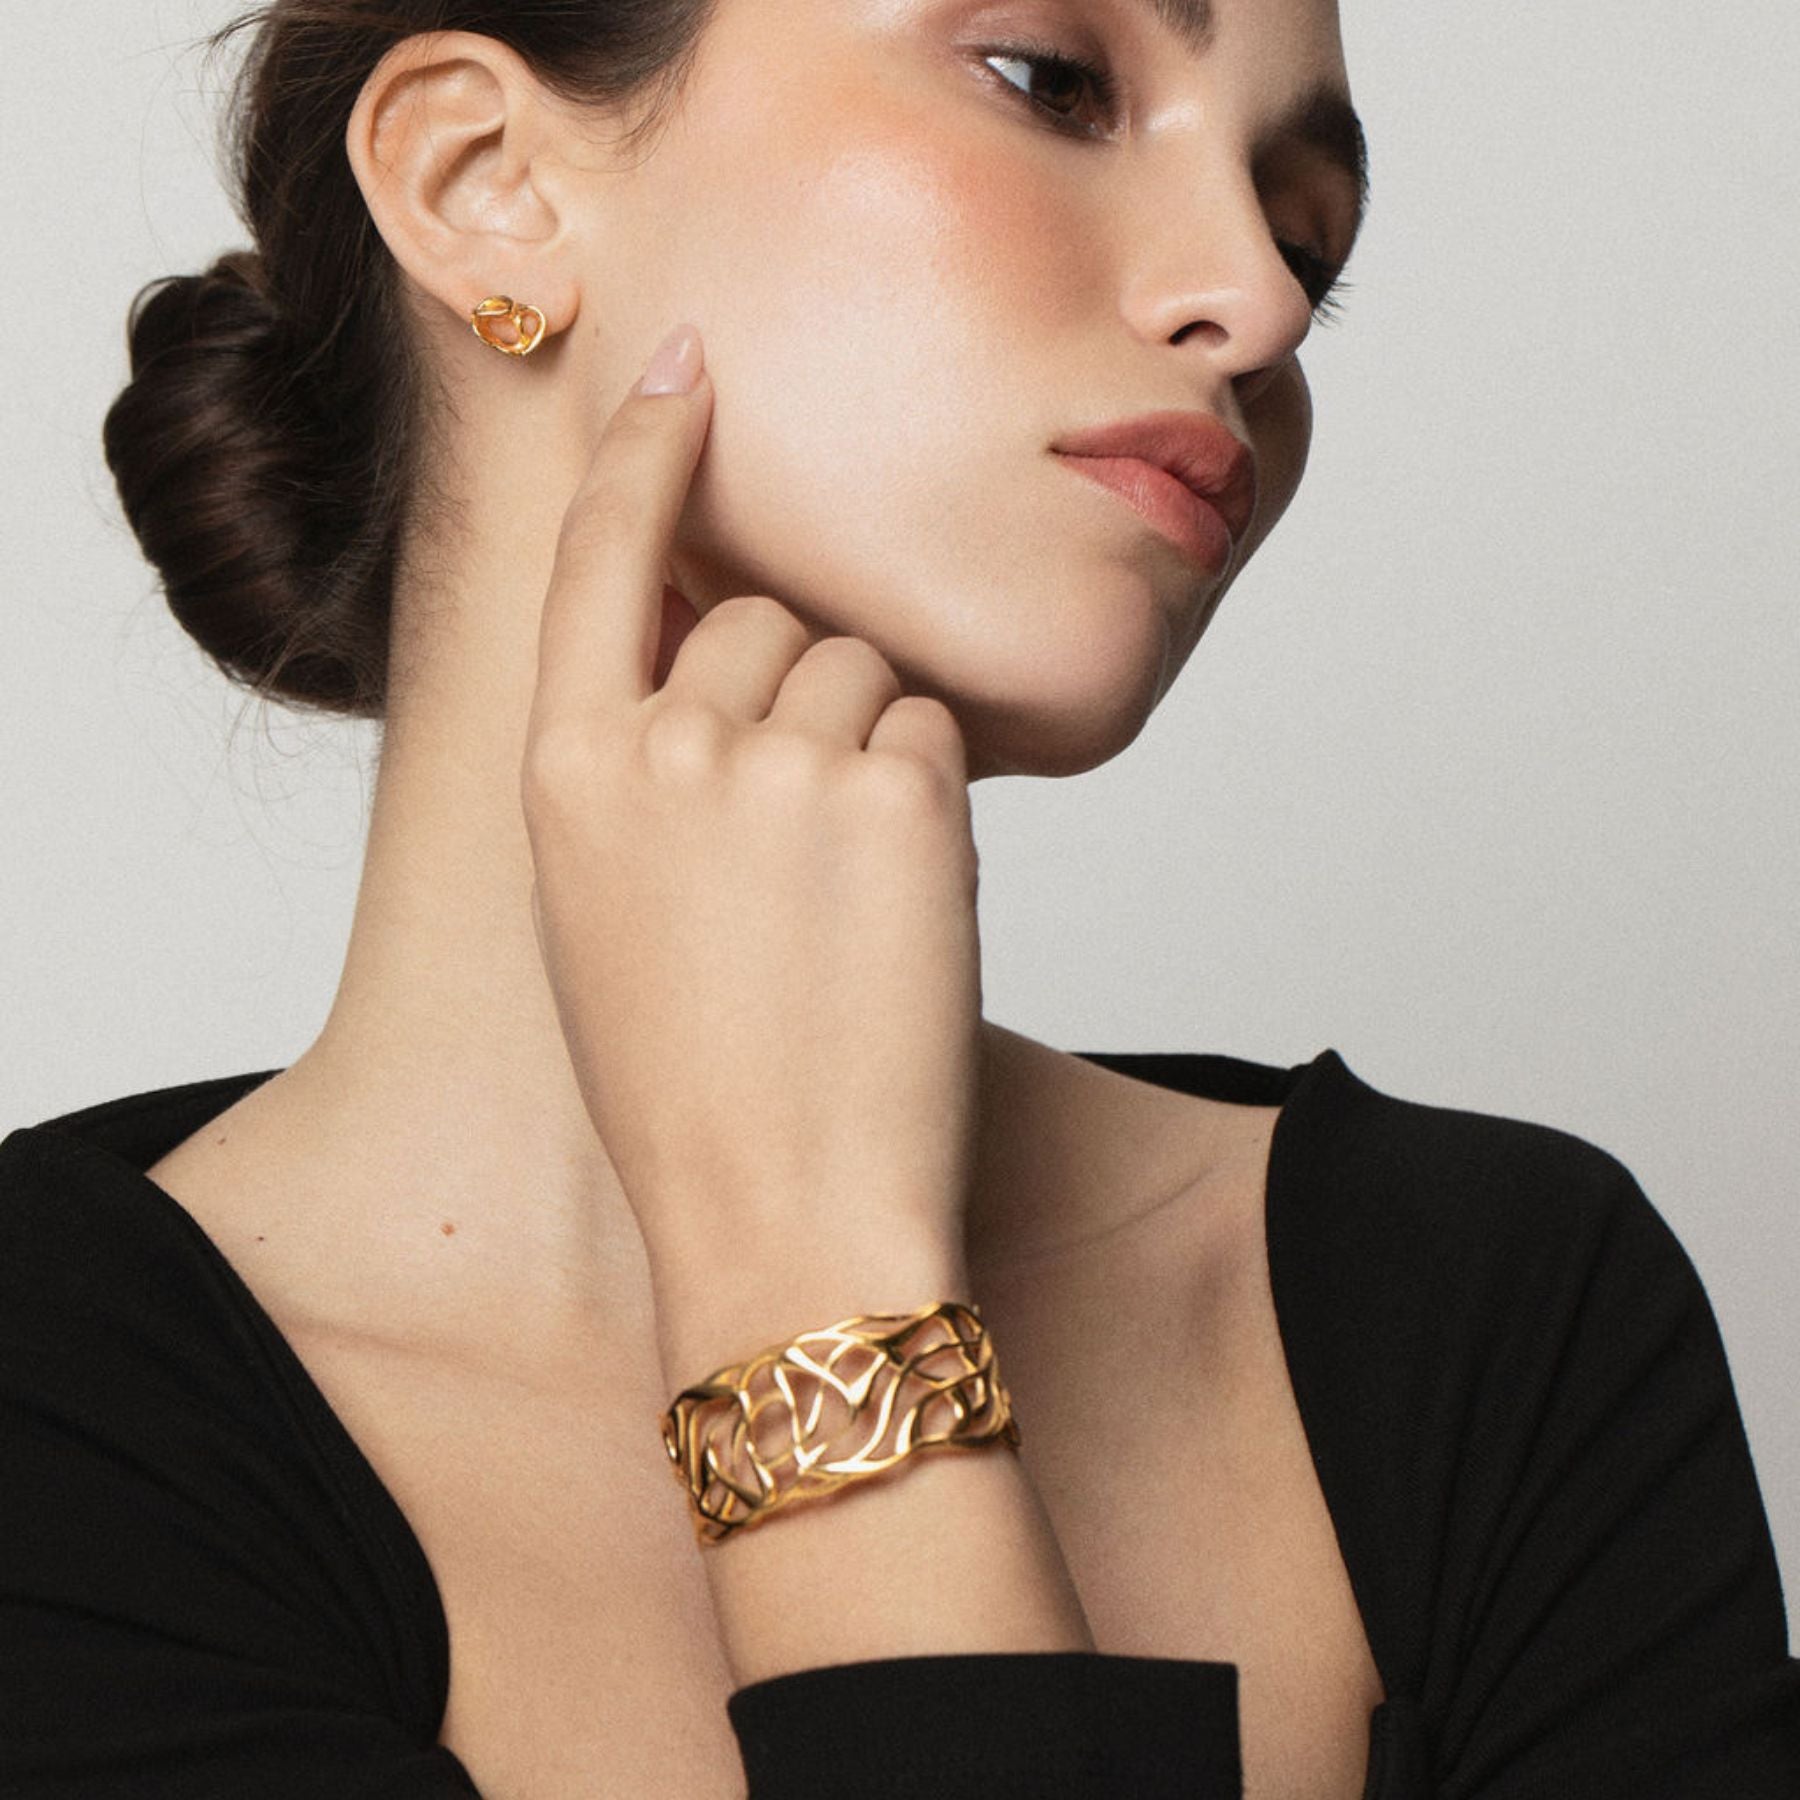 Model wearing Elegantly fluid cuff bracelet in 18k gold vermeil.